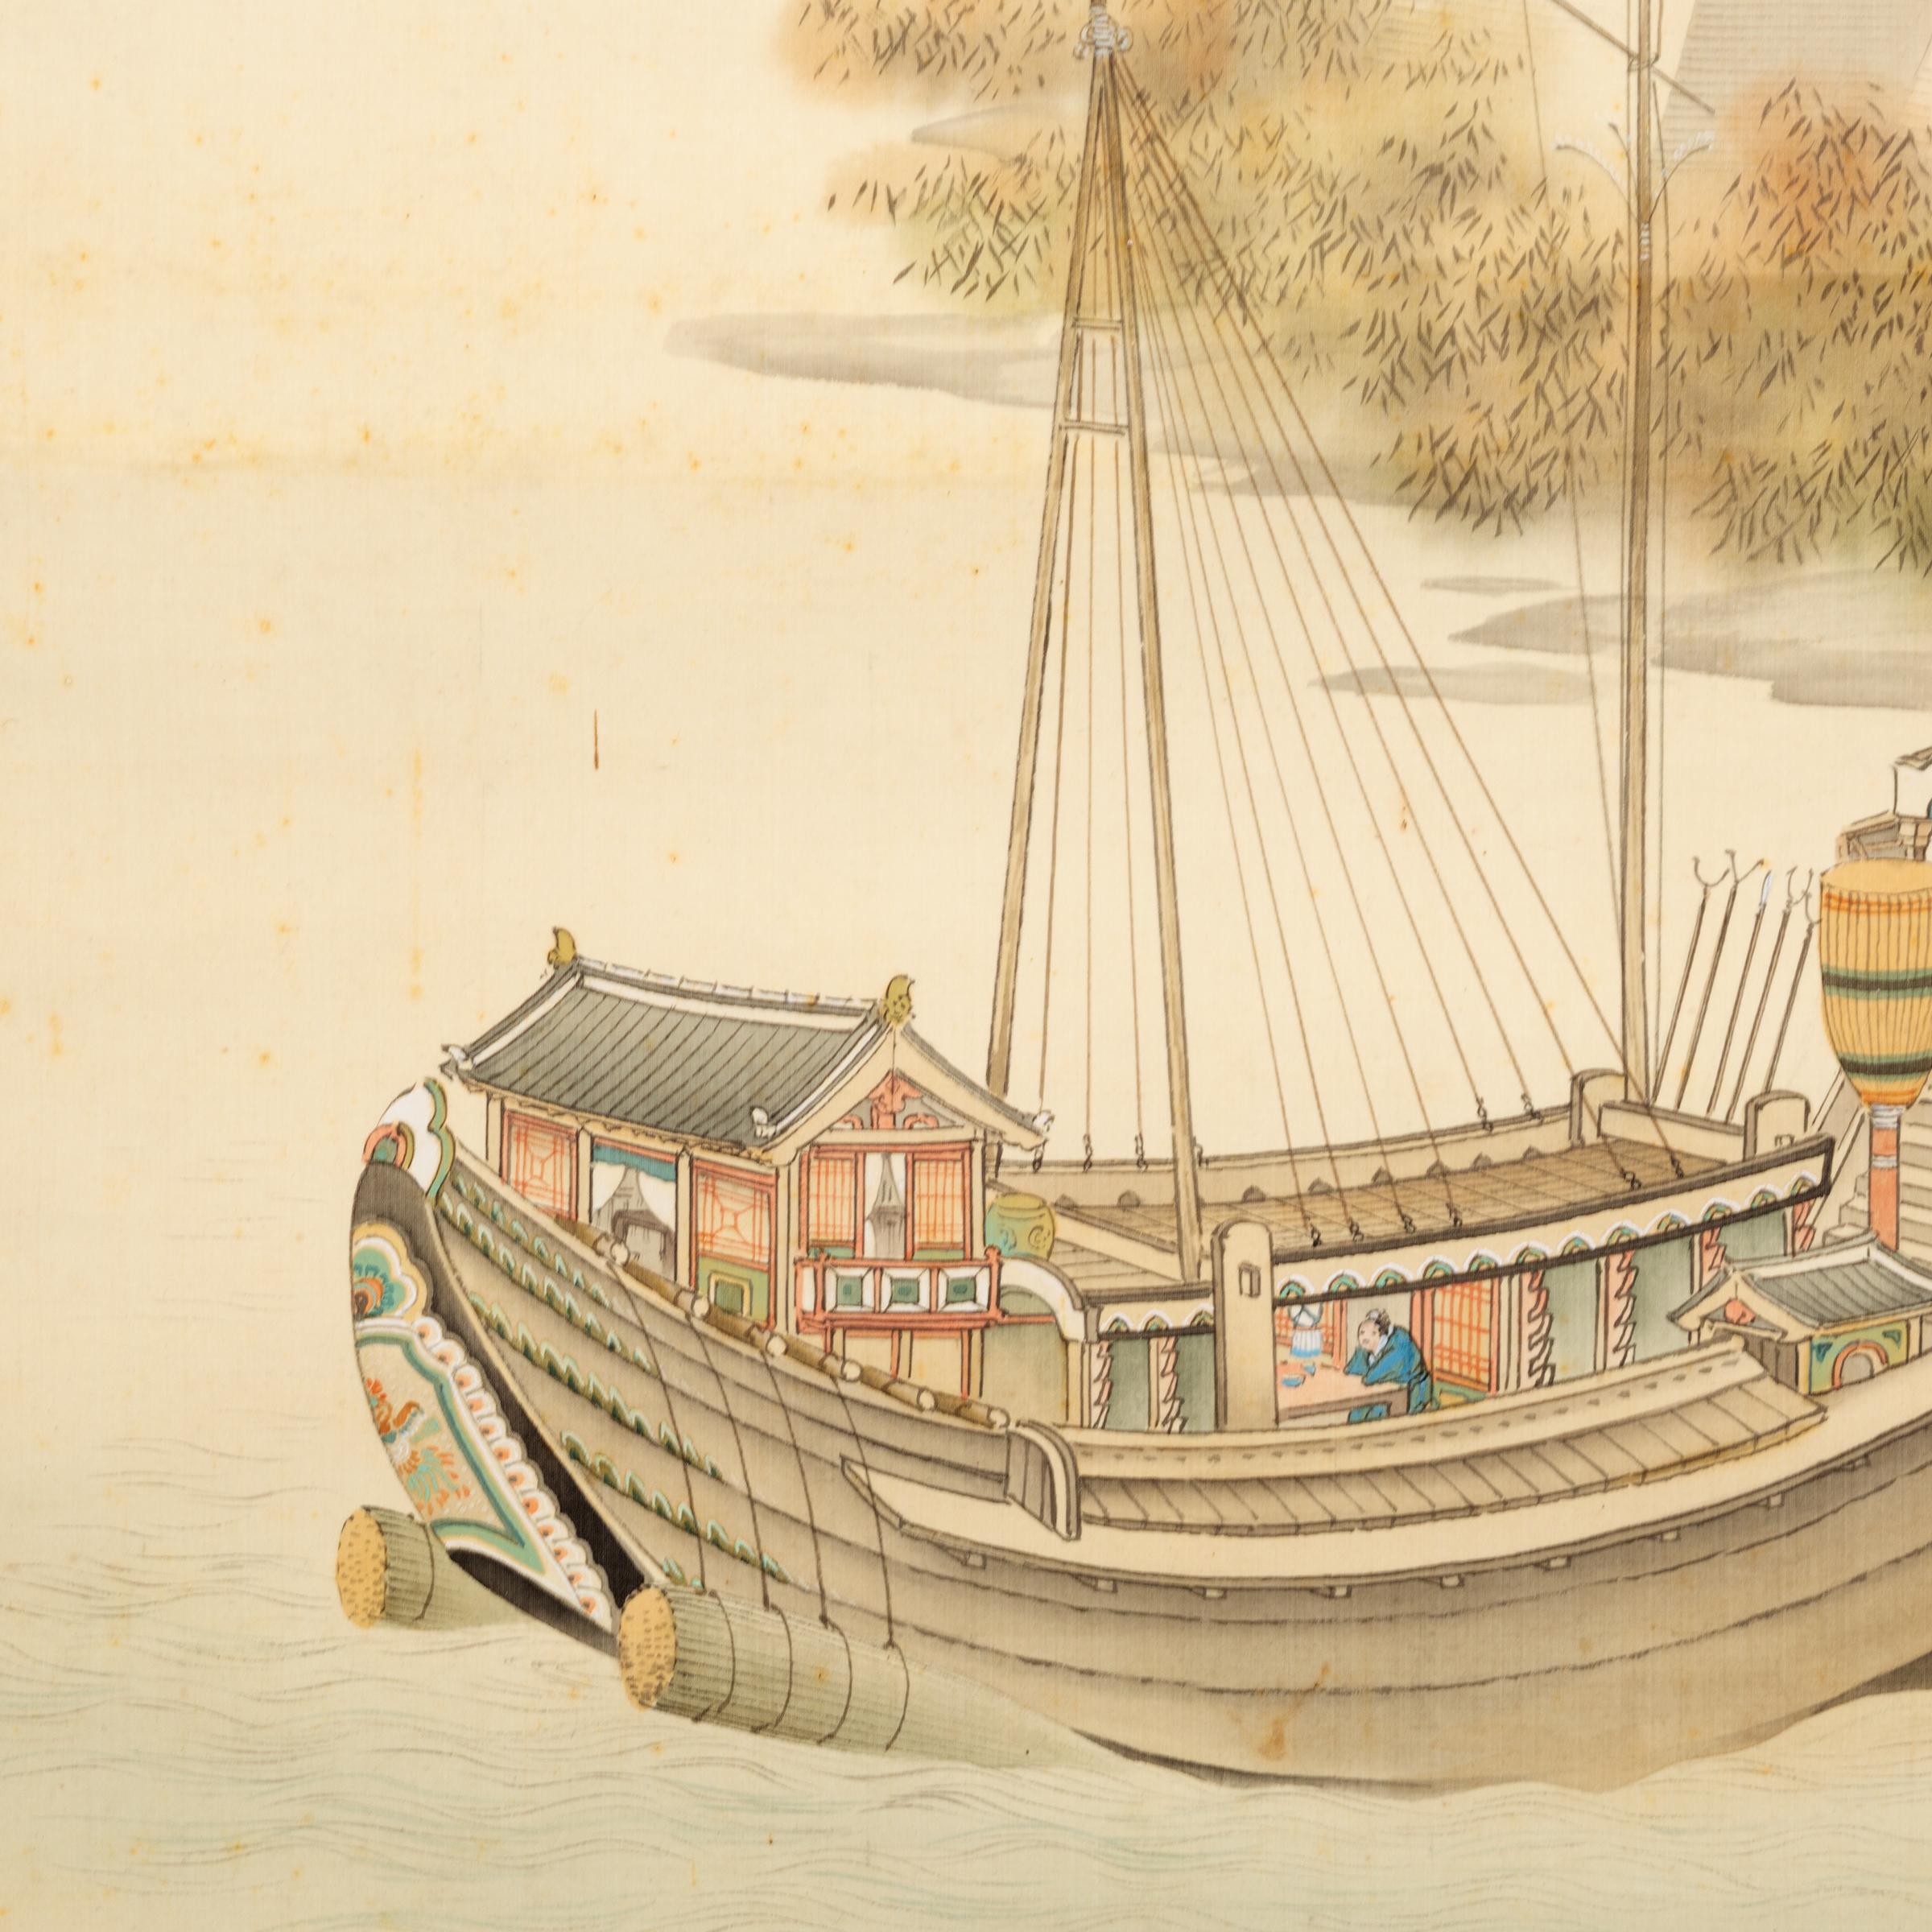 Bien que la peinture occidentale ait été initialement adoptée pendant la période Meiji (1868-1912), les artistes ont fait revivre les styles de peinture traditionnels en cherchant à créer un style japonais moderne enraciné dans le passé. Cet exquis